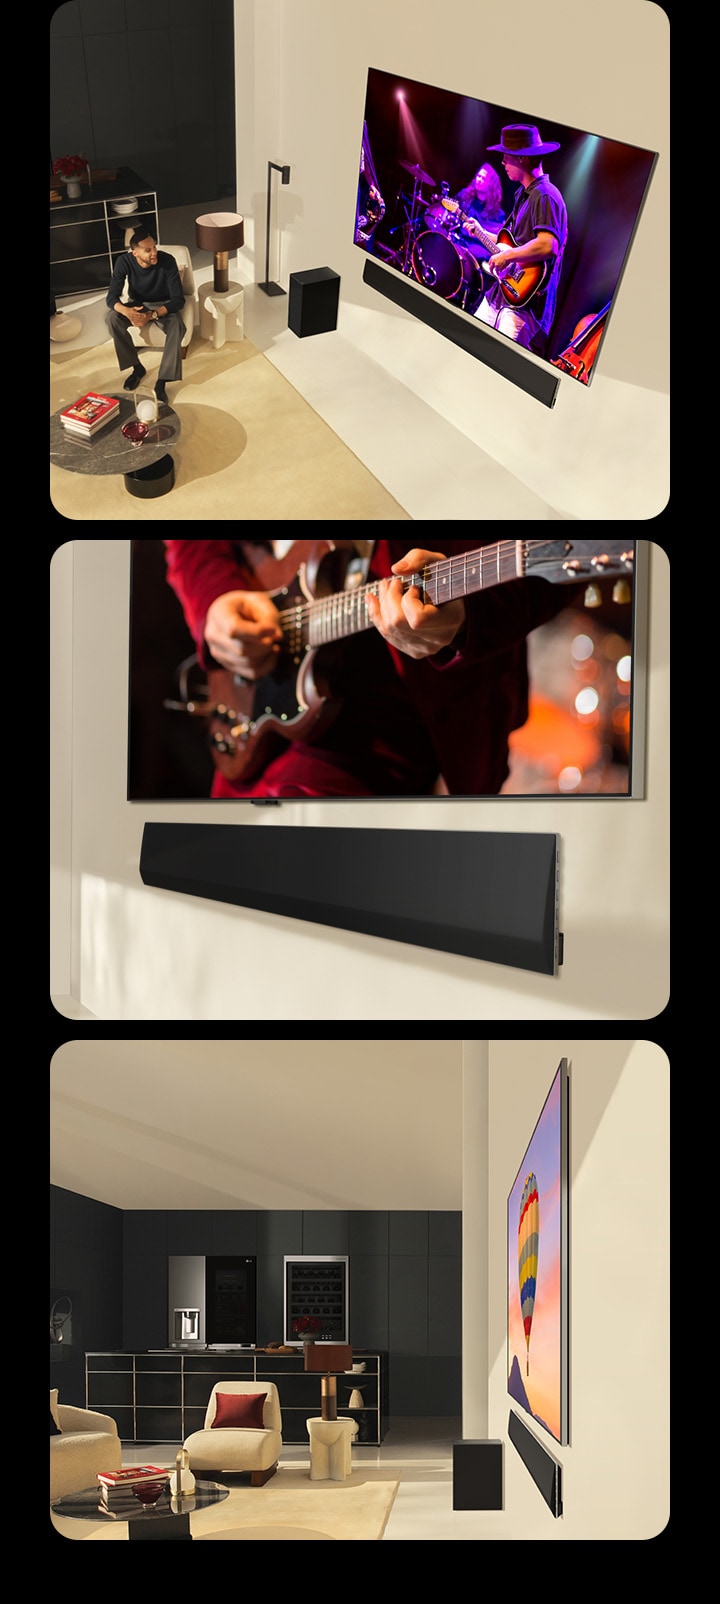 Üç görüntü arka arkaya gösterilir. İlk olarak, modern bir yaşam alanında mükemmel uyumlu LG Soundbar SG10TY bağlı bir LG OLED evo G4 ekranında konser izleyen bir çift gösteriliyor. TV izleyen bir adamın olduğu aynı görüntü mobil cihazda da gösteriliyor. Aşağıda ise, LG OLED TV ve LG Soundbar’ın alt kısmının açılı görünümü yer alıyor. Diğeri ise her ikisi de olağanüstü ince boyutlara ve duvarla arasında neredeyse sıfır boşluğa sahip LG OLED evo G4 ve LG Soundbar SG10TY’nin yan profilden görünümünü gösteriyor. 